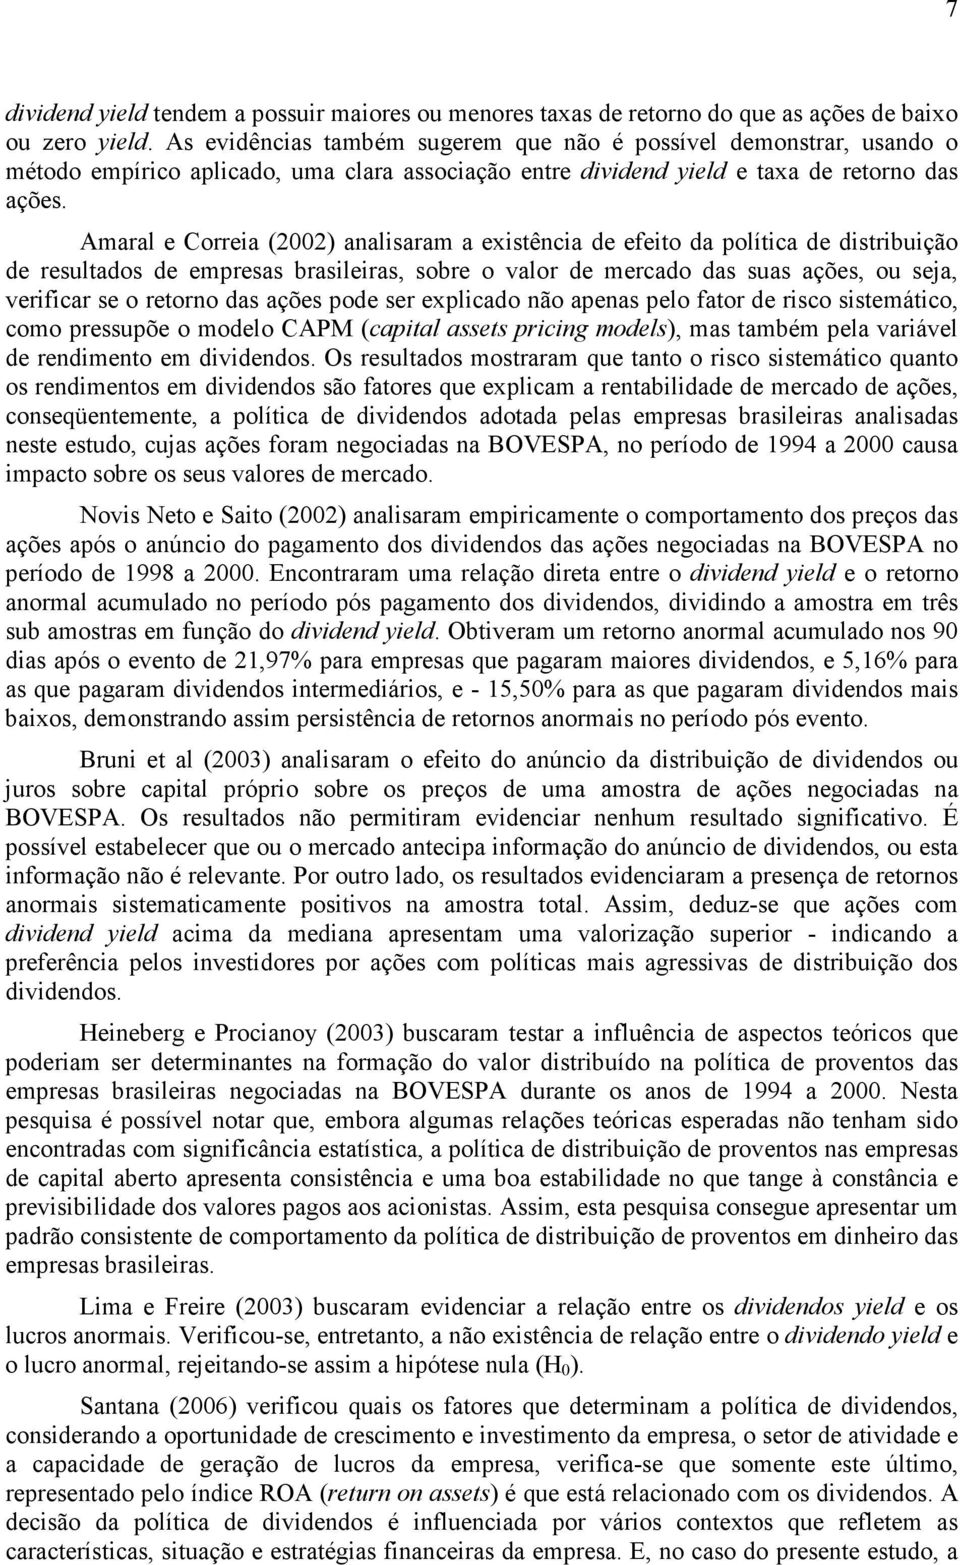 Amaral e Correia (2002) analisaram a existência de efeito da política de distribuição de resultados de empresas brasileiras, sobre o valor de mercado das suas ações, ou seja, verificar se o retorno